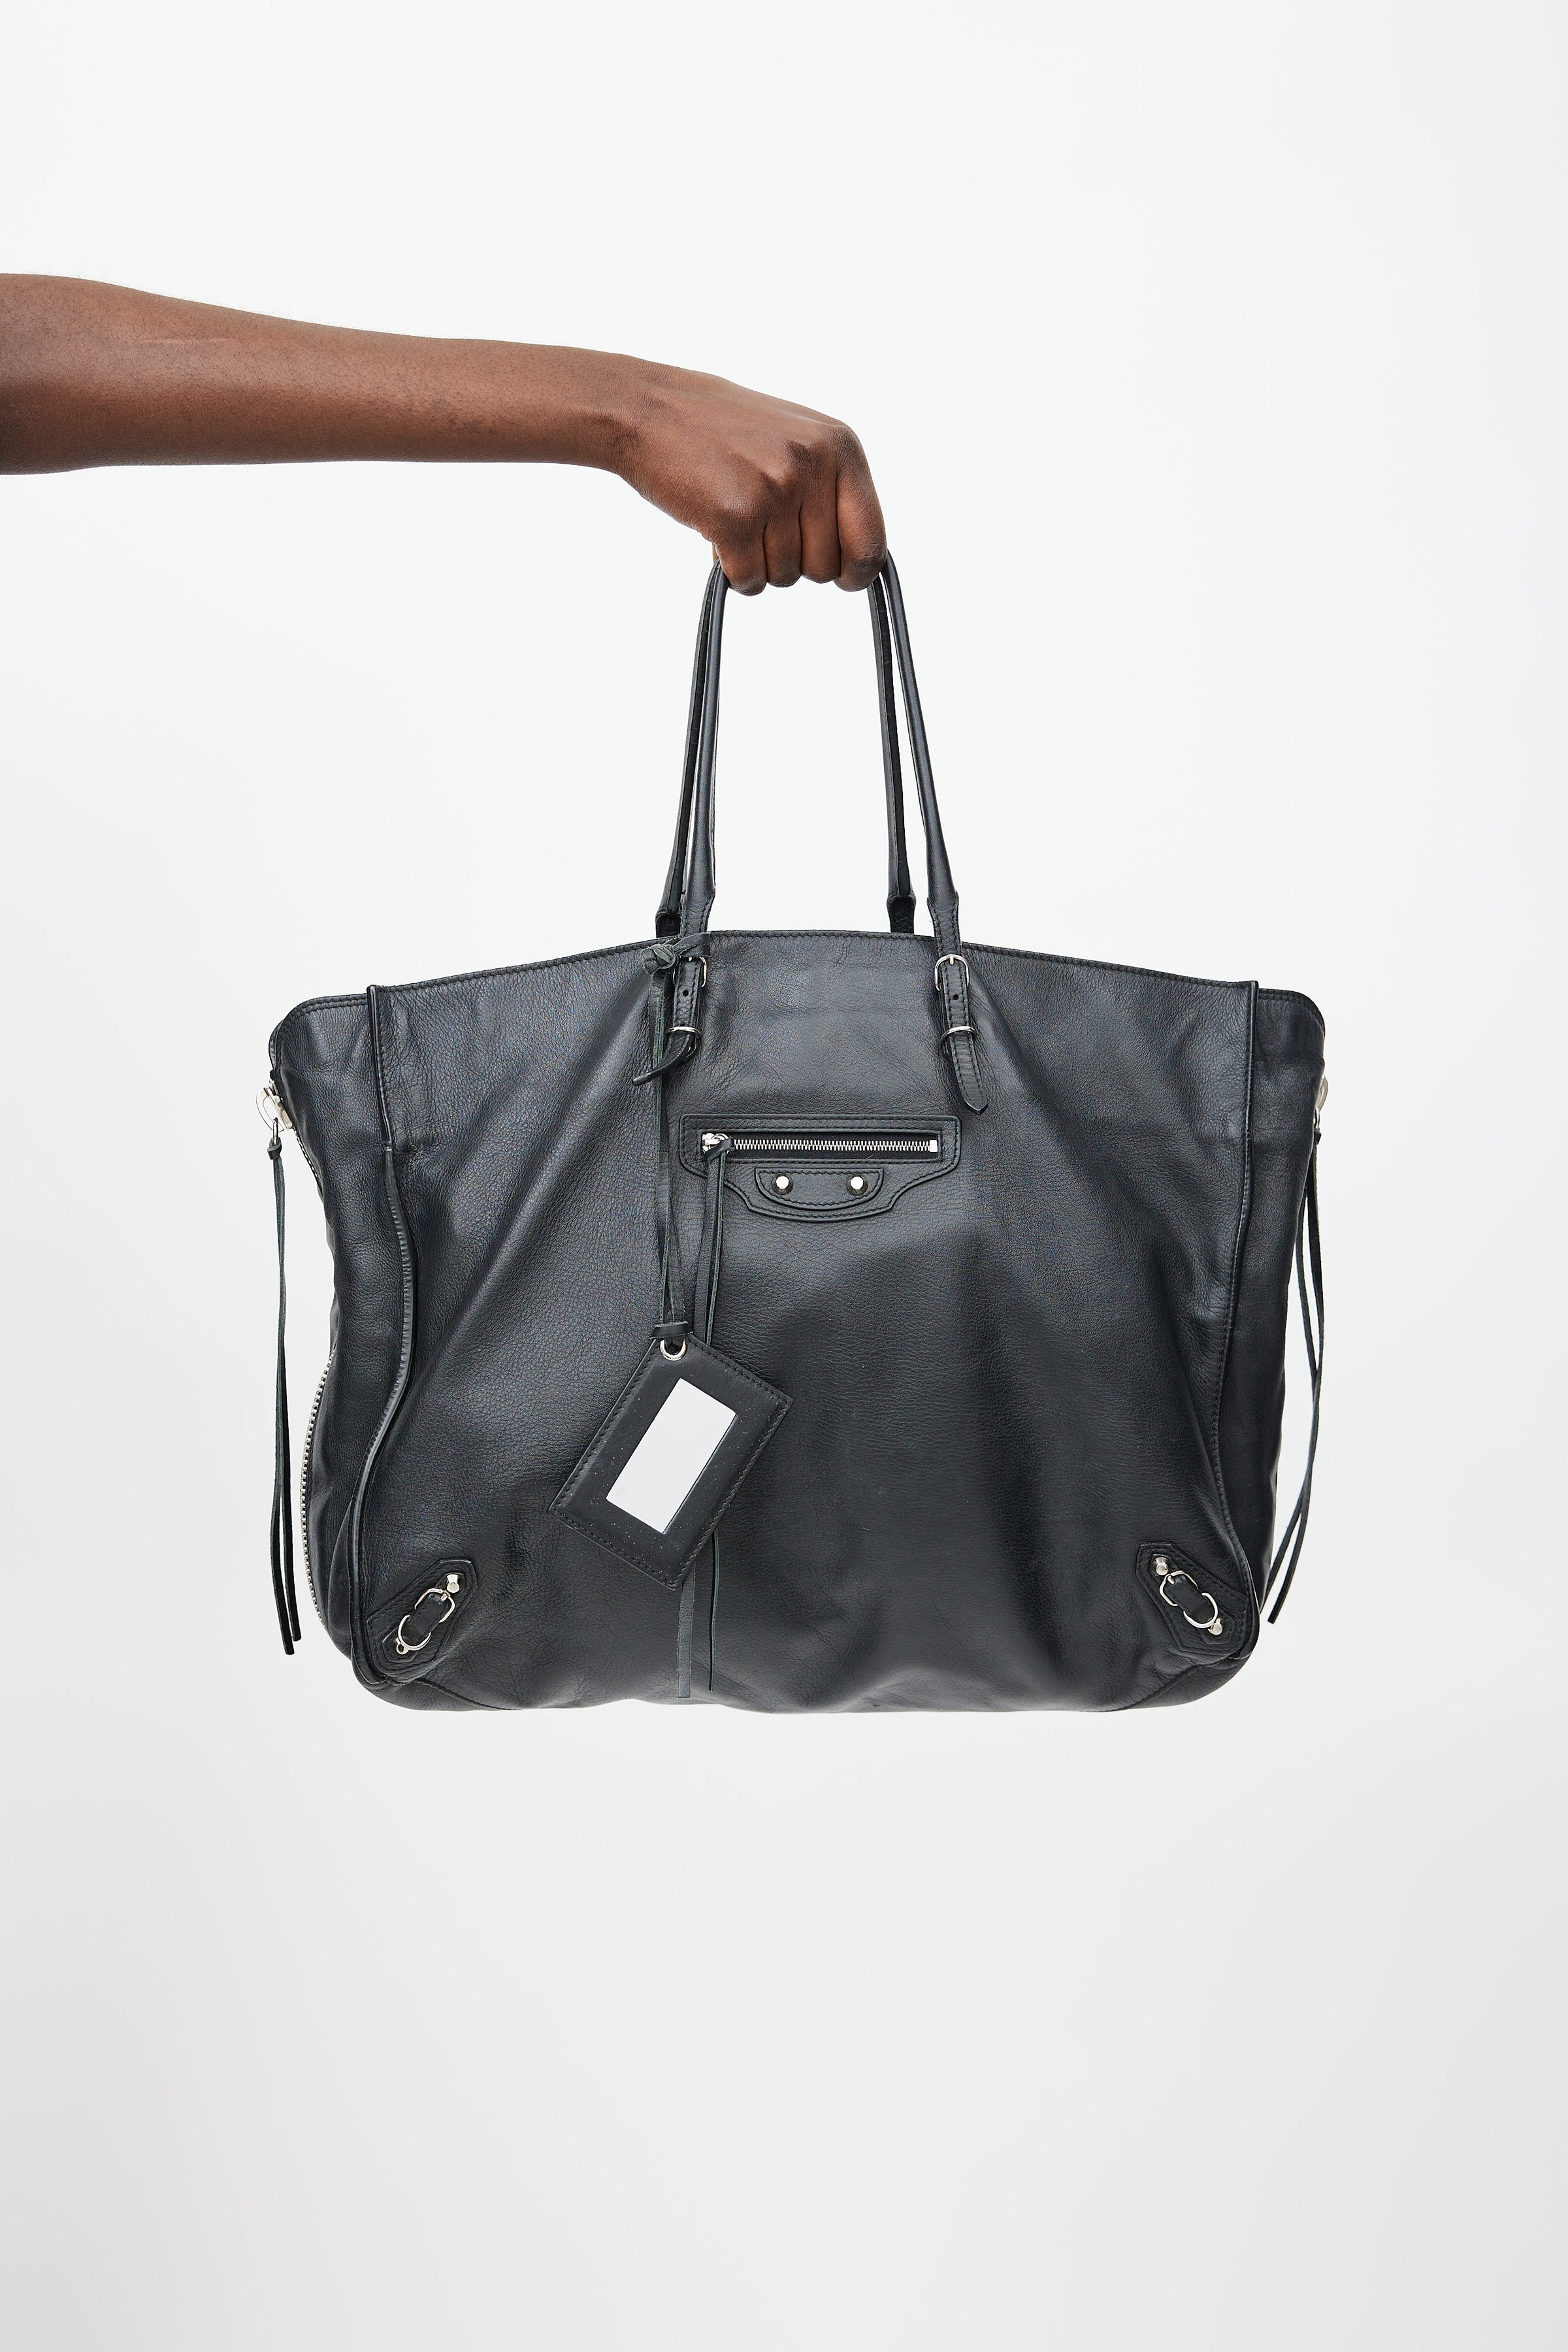 Balenciaga Leather Papier Tote Bag